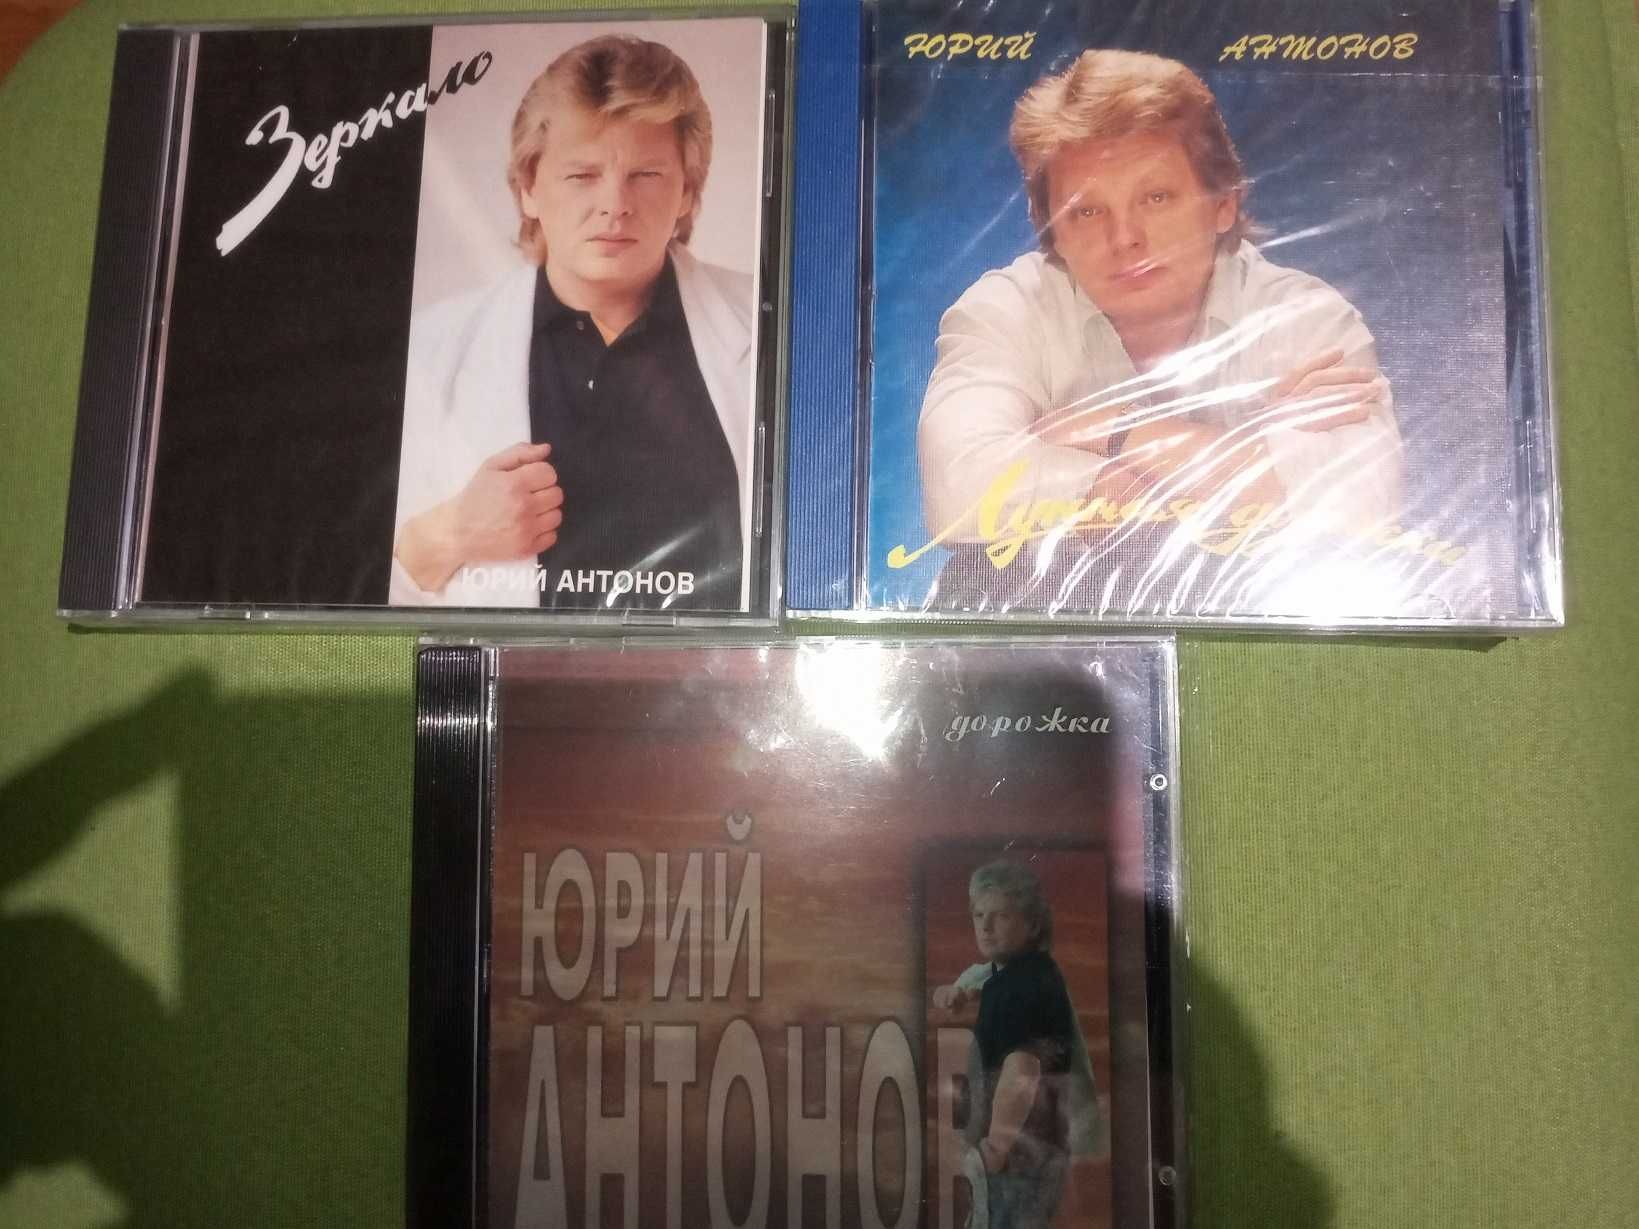 Первые издания Юрия Антонова на CD от Jeff Records (1993)